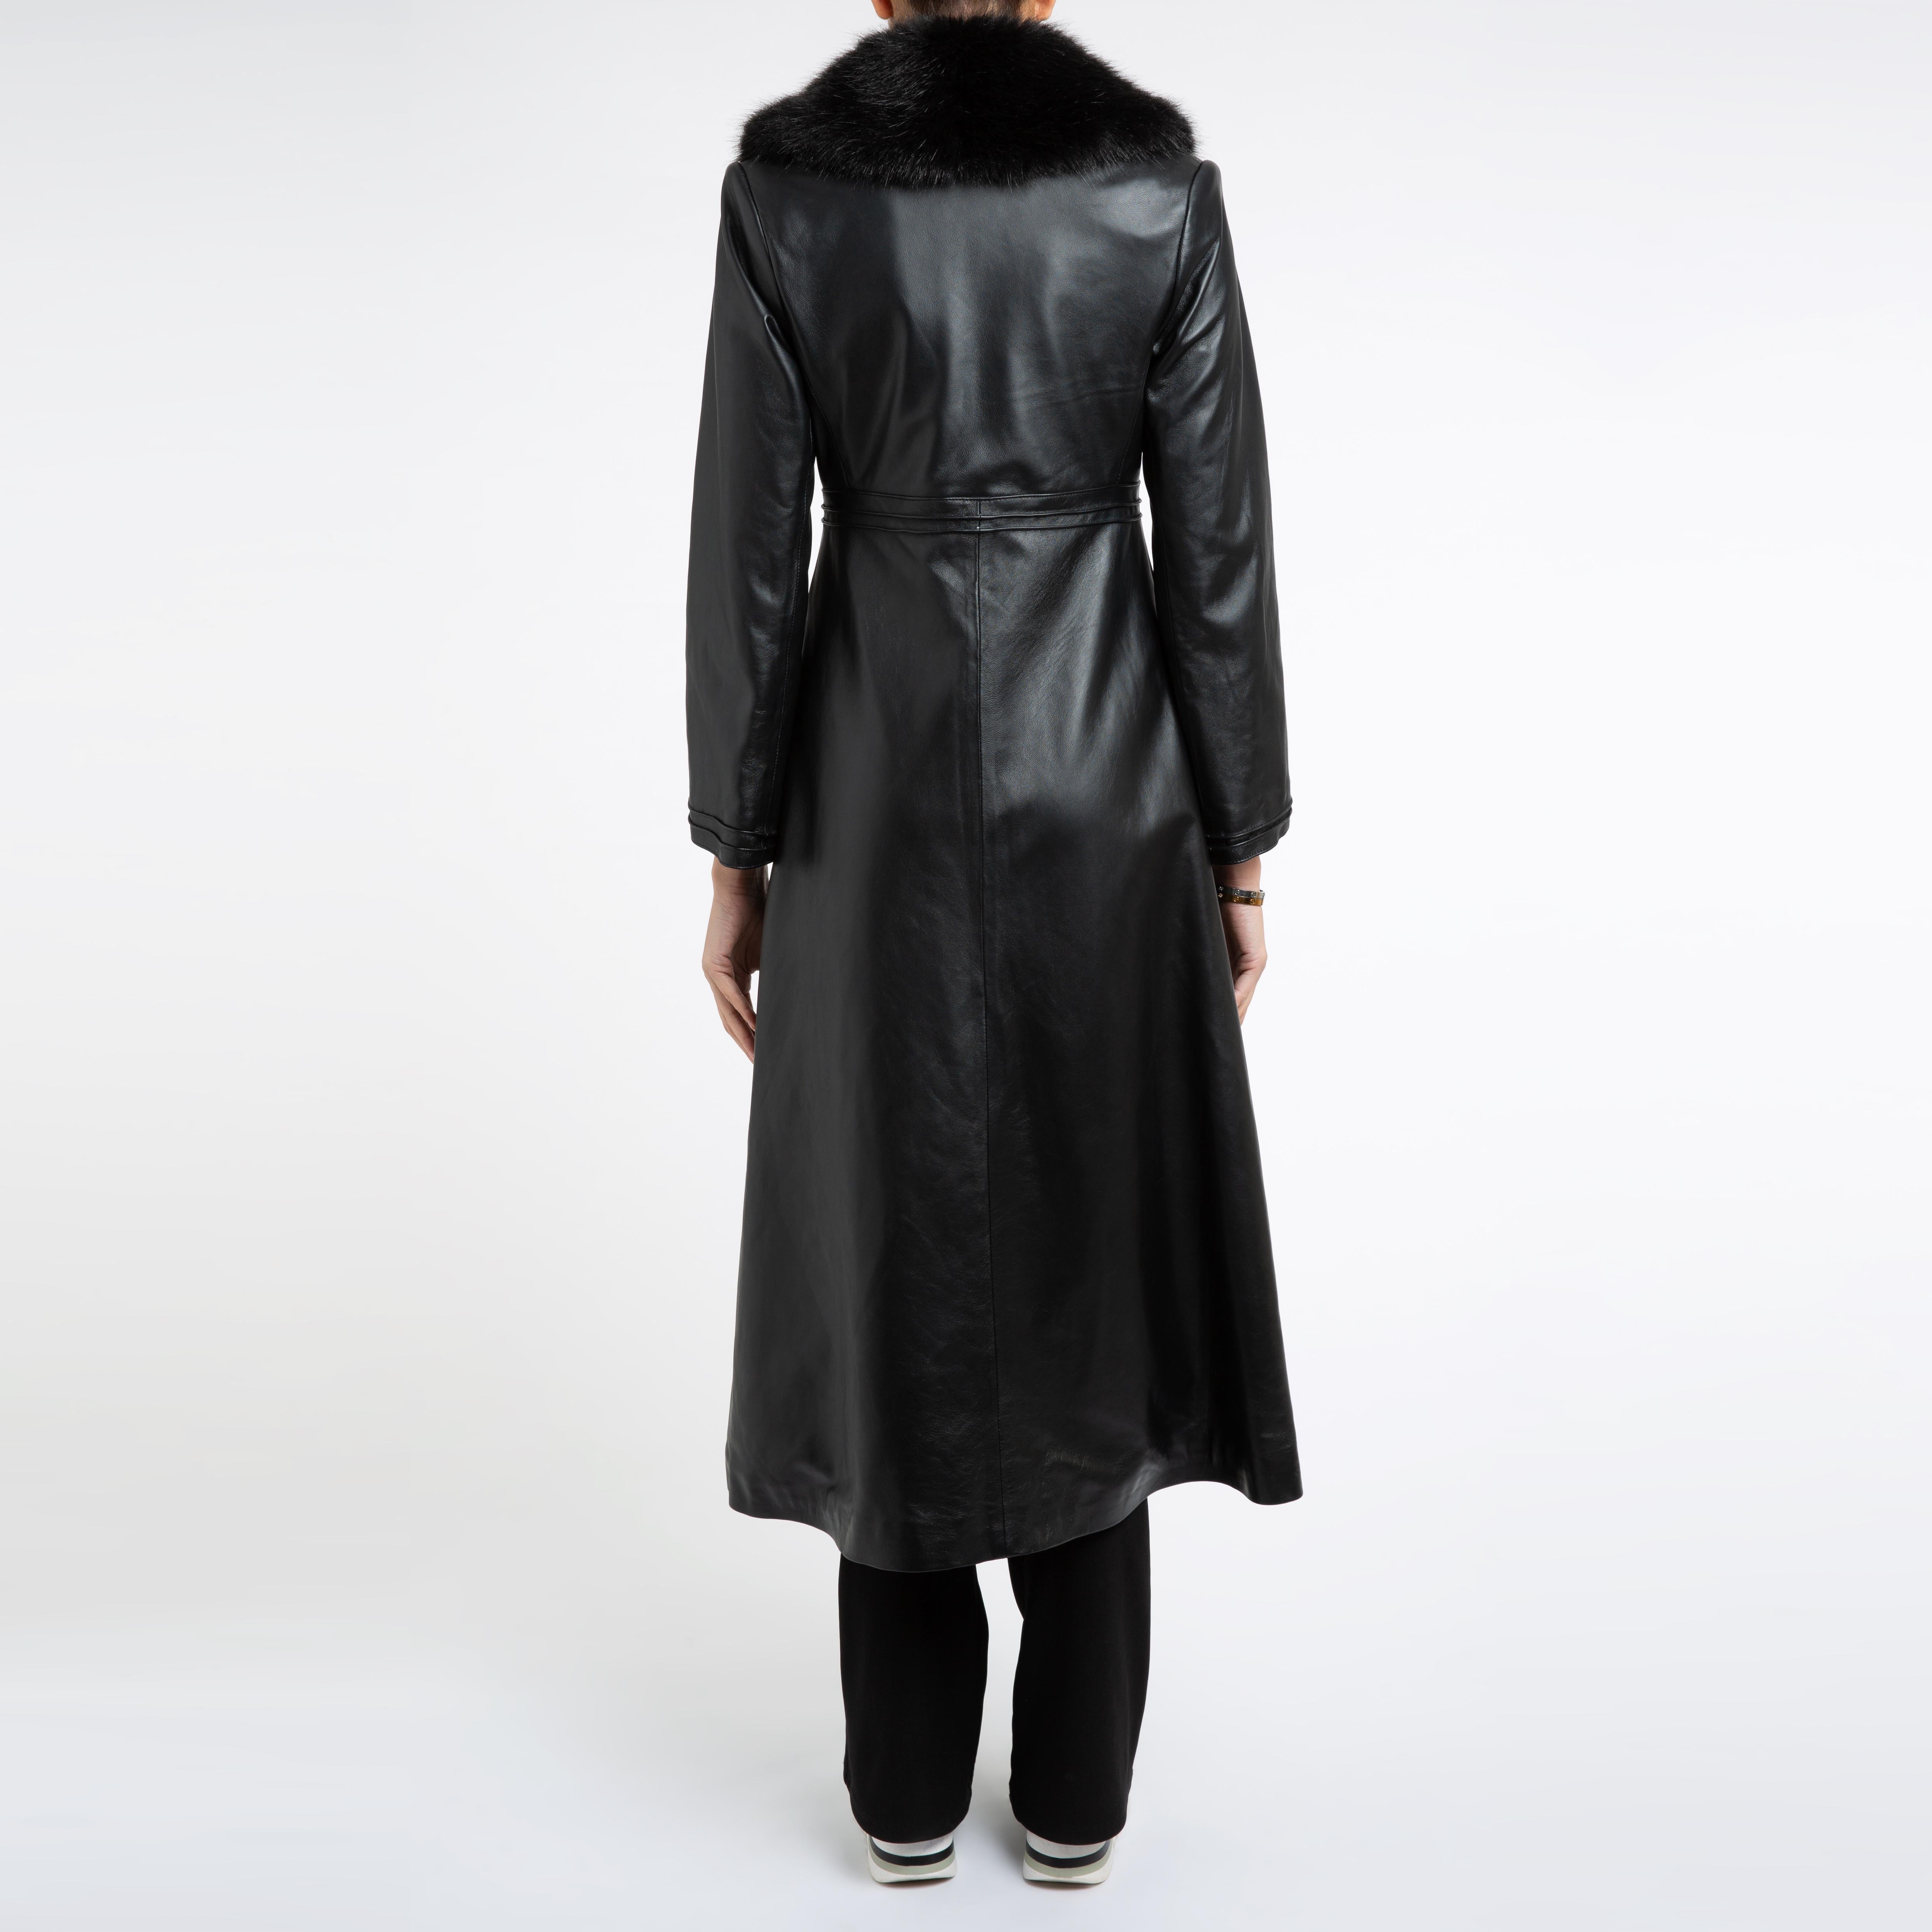 Verheyen London Edward Leather Coat with Faux Fur Collar in Black - Size uk 8 1